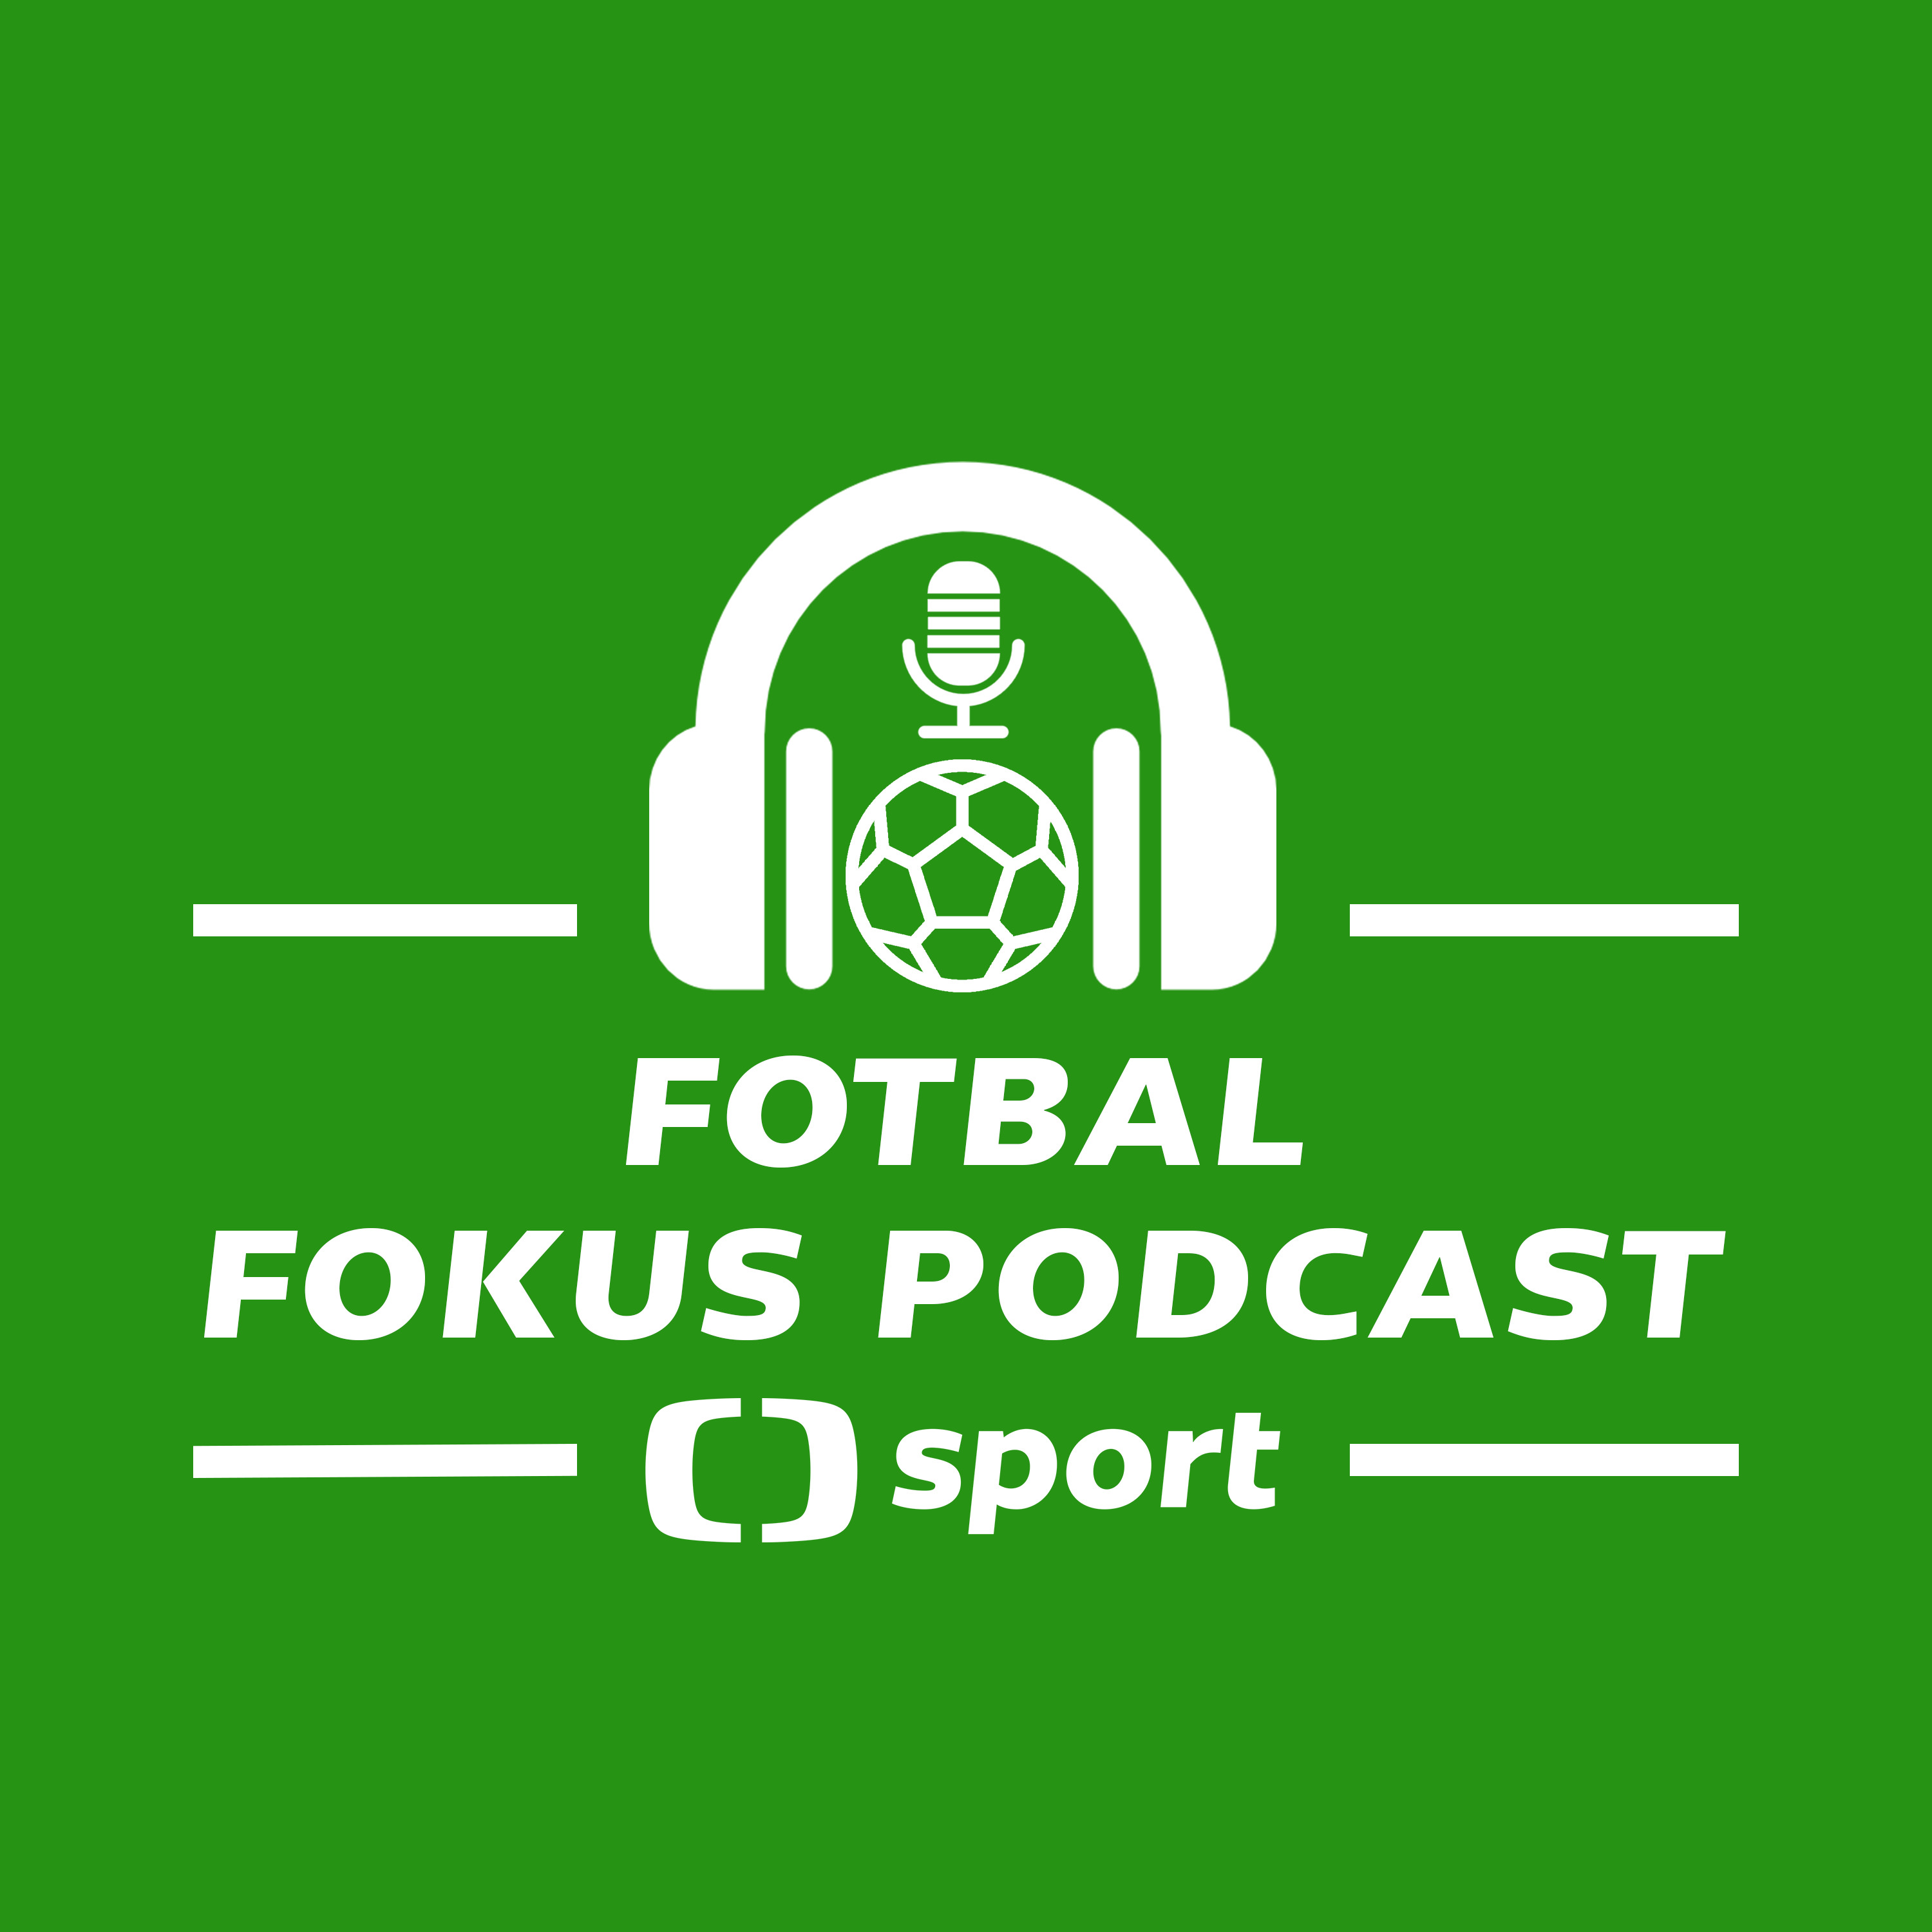 Fotbal fokus podcast: S Davidem Kozohorským o vysílání Eura na ČT sport